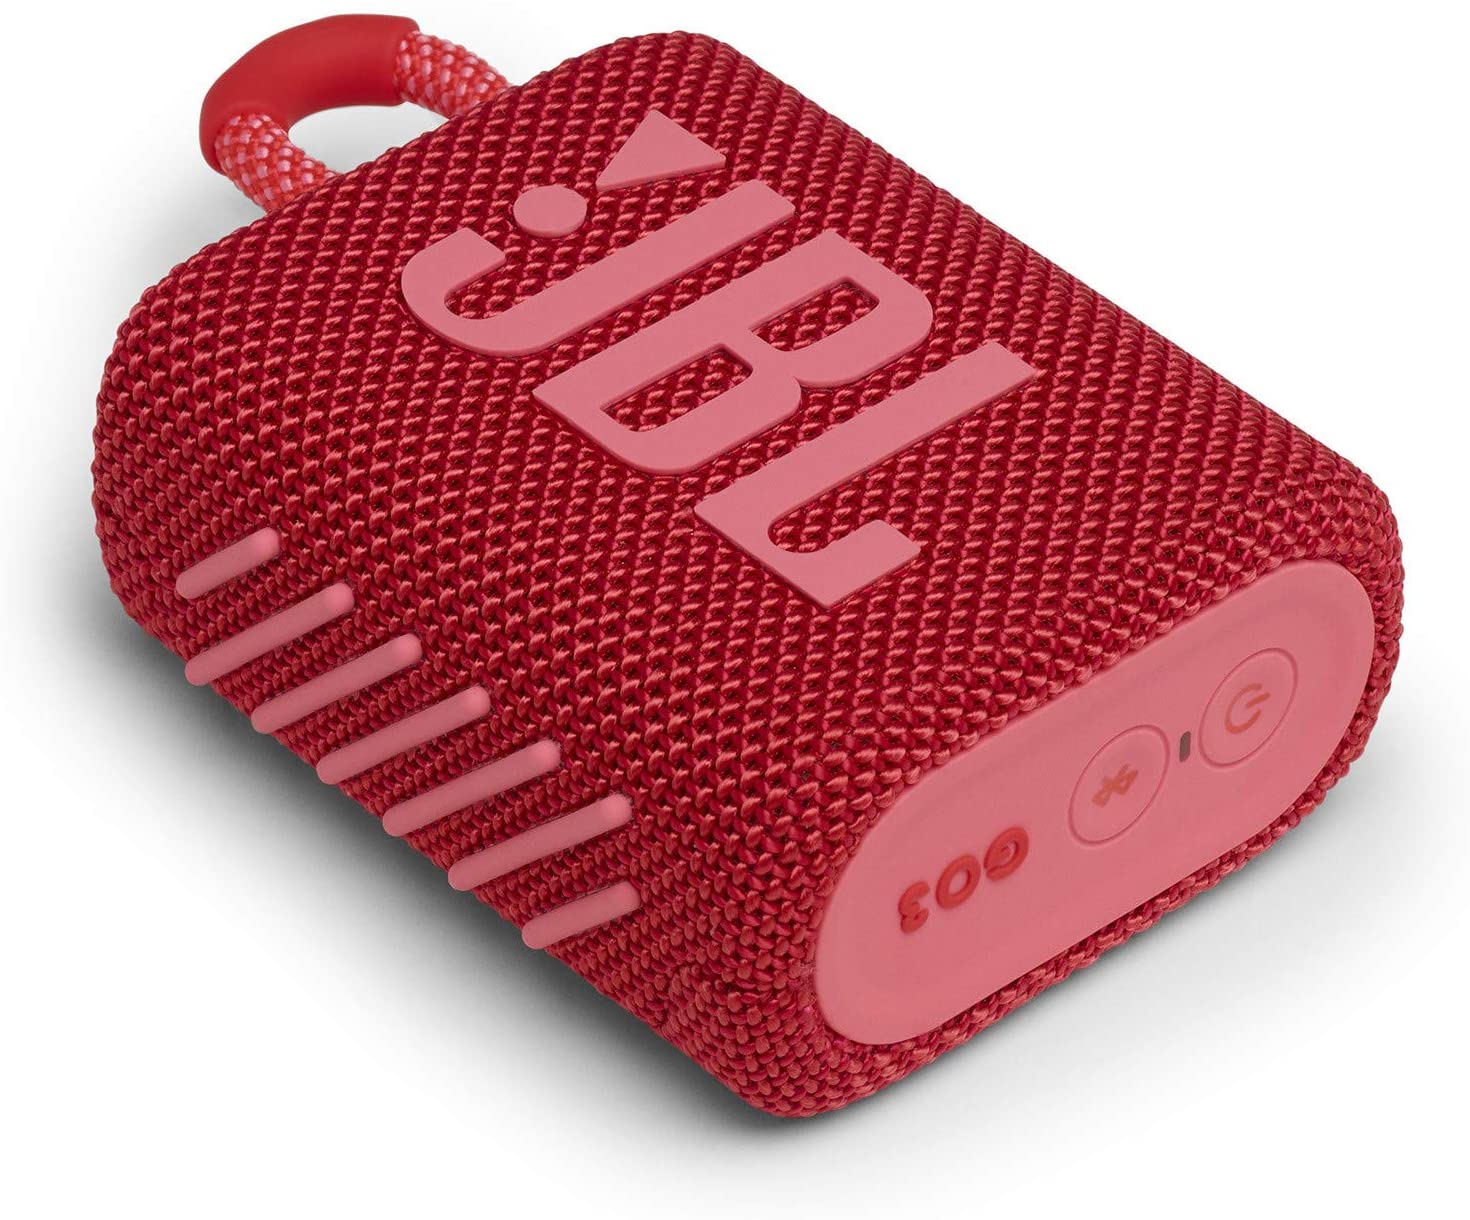 JBL Go 3 Portable Waterproof Red Bluetooth Speaker